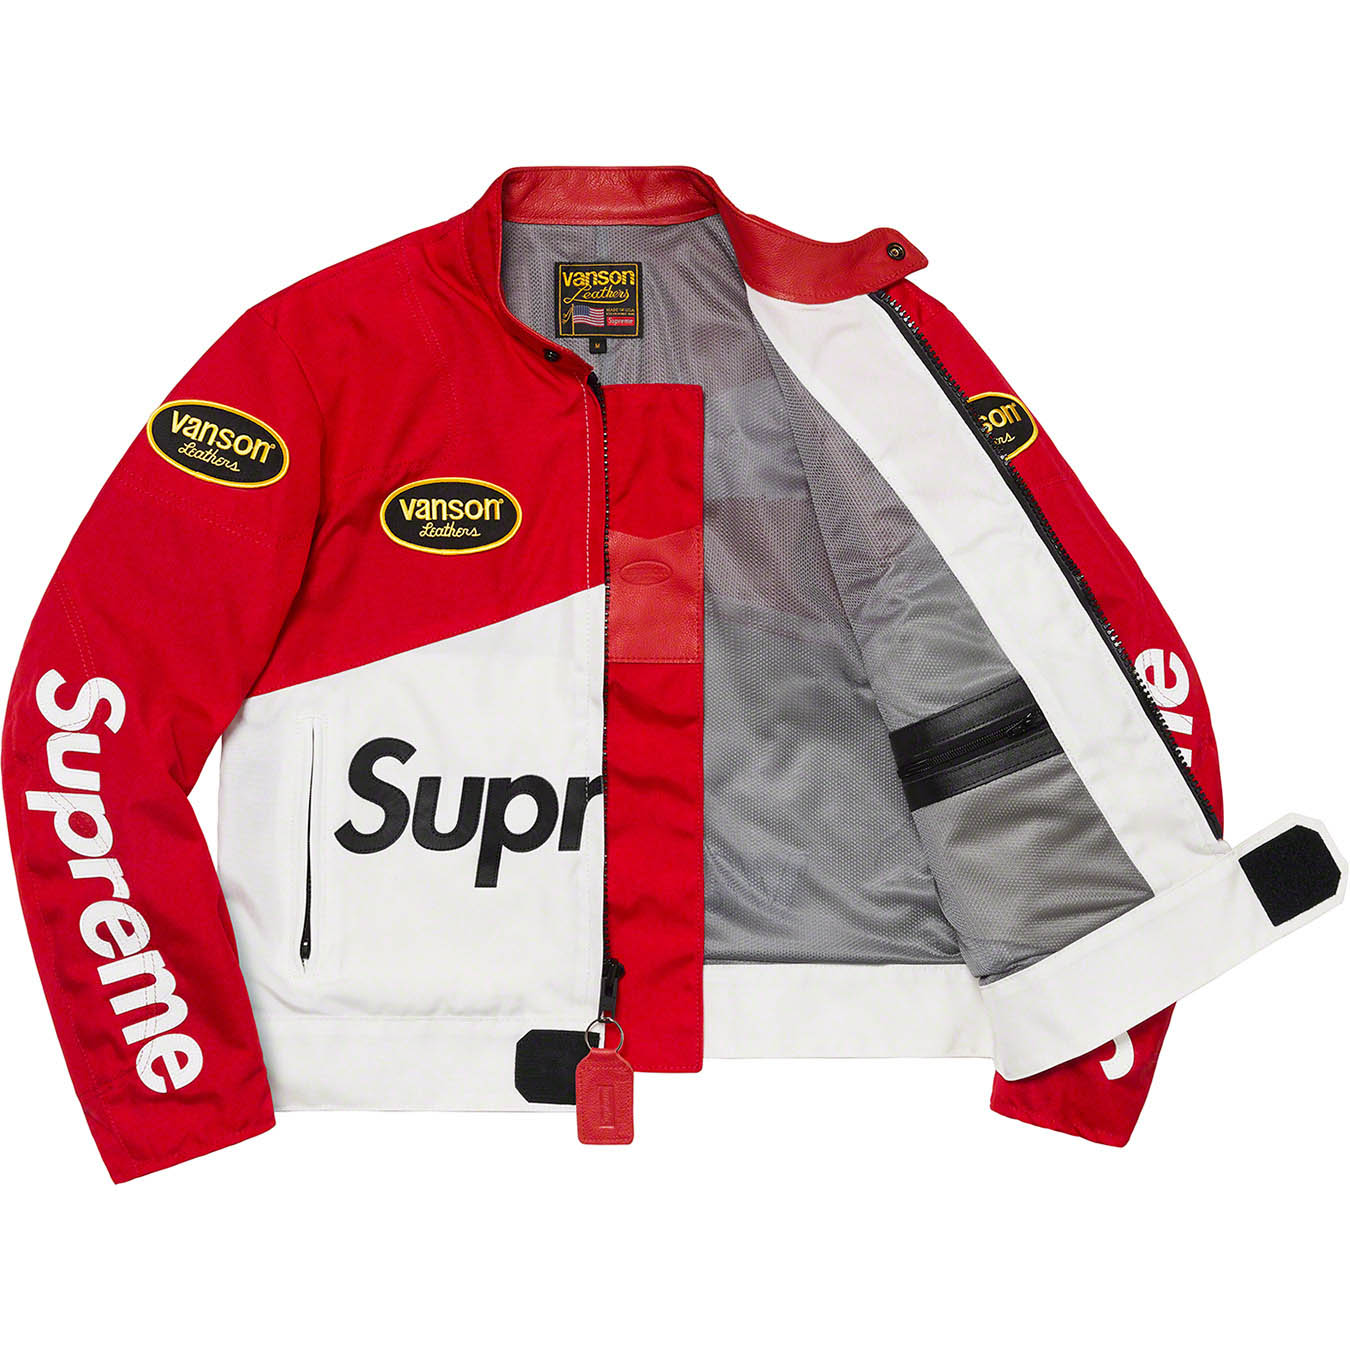 Supreme Supreme®/Vanson Leathers® Cordura® Jacket